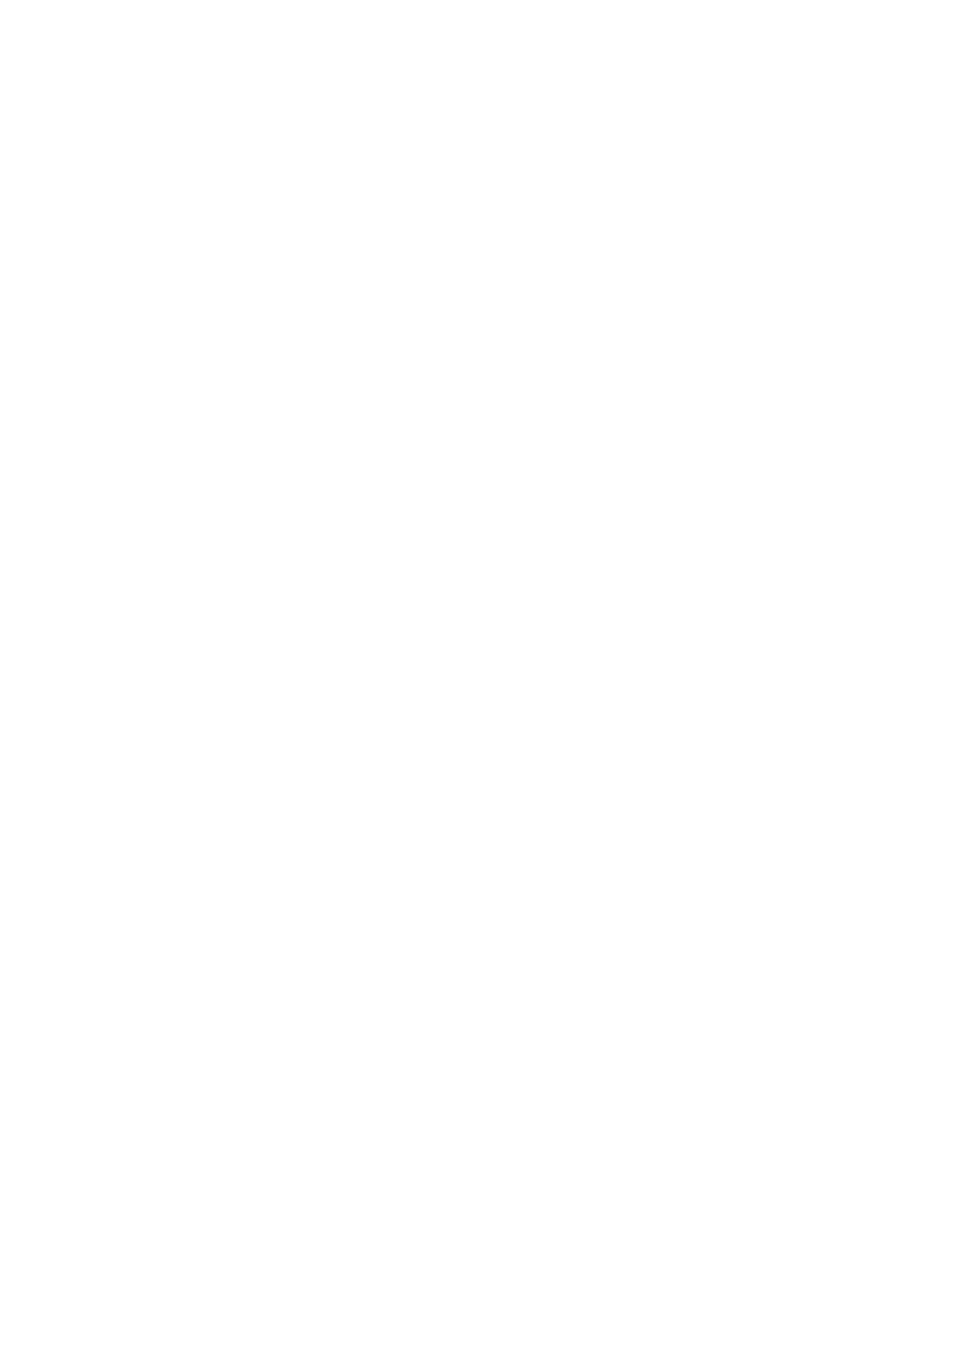 87/bnr 19 ) Utarbeiding av arealplan for Lavangen kommune Varsel om oppstart av planarbeid - kommuneplan for Karlsøy kommune Varsel om oppstart av reguleringsplanarbeid på Innset - Bardu kommune